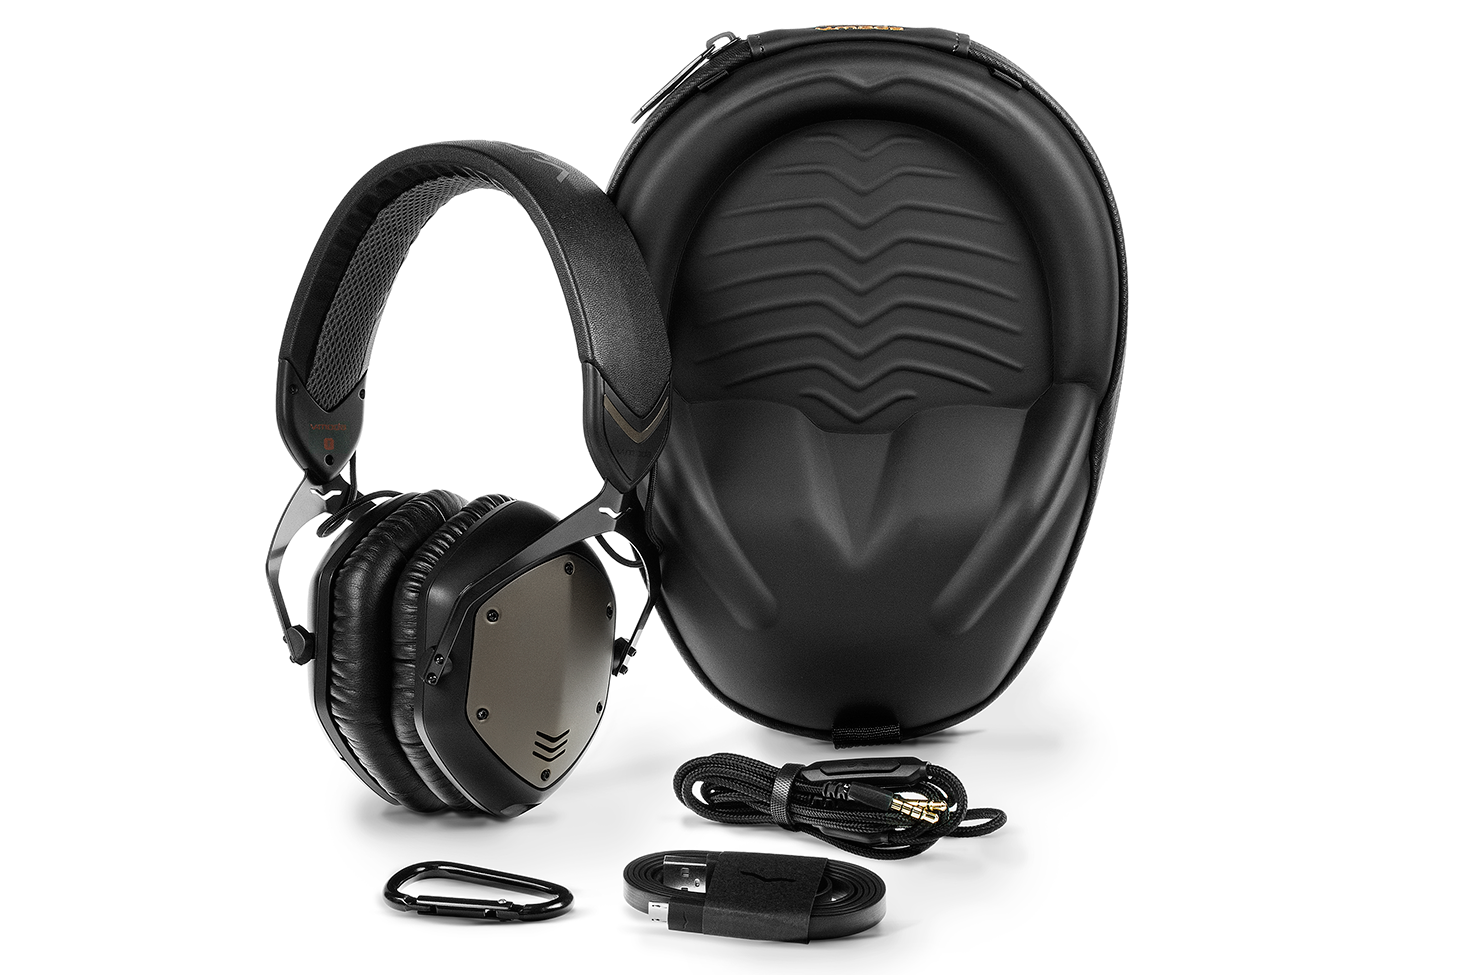 vmoda crossfade wireless headphones reimagined m100 xfw gunmetal accessories 01 web